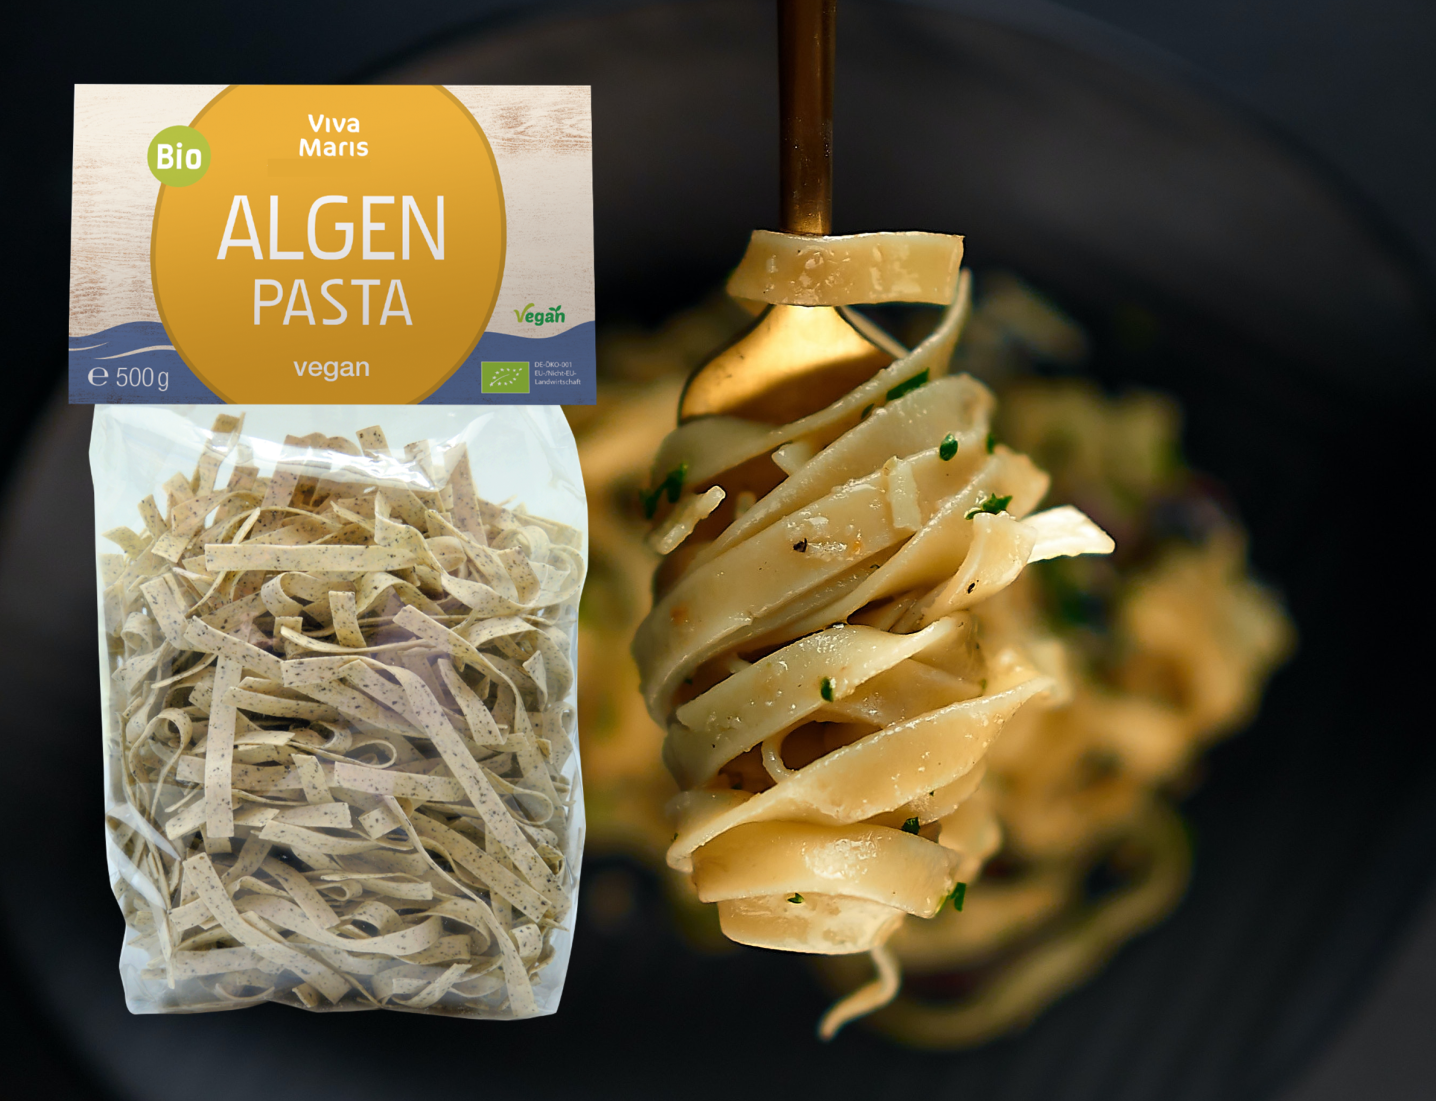 Vorteils-Set 2x die fruchtige Bio Algen Tomaten Sauce á 300ml + 1x Bio Algen Pasta 500g - Spare 33%